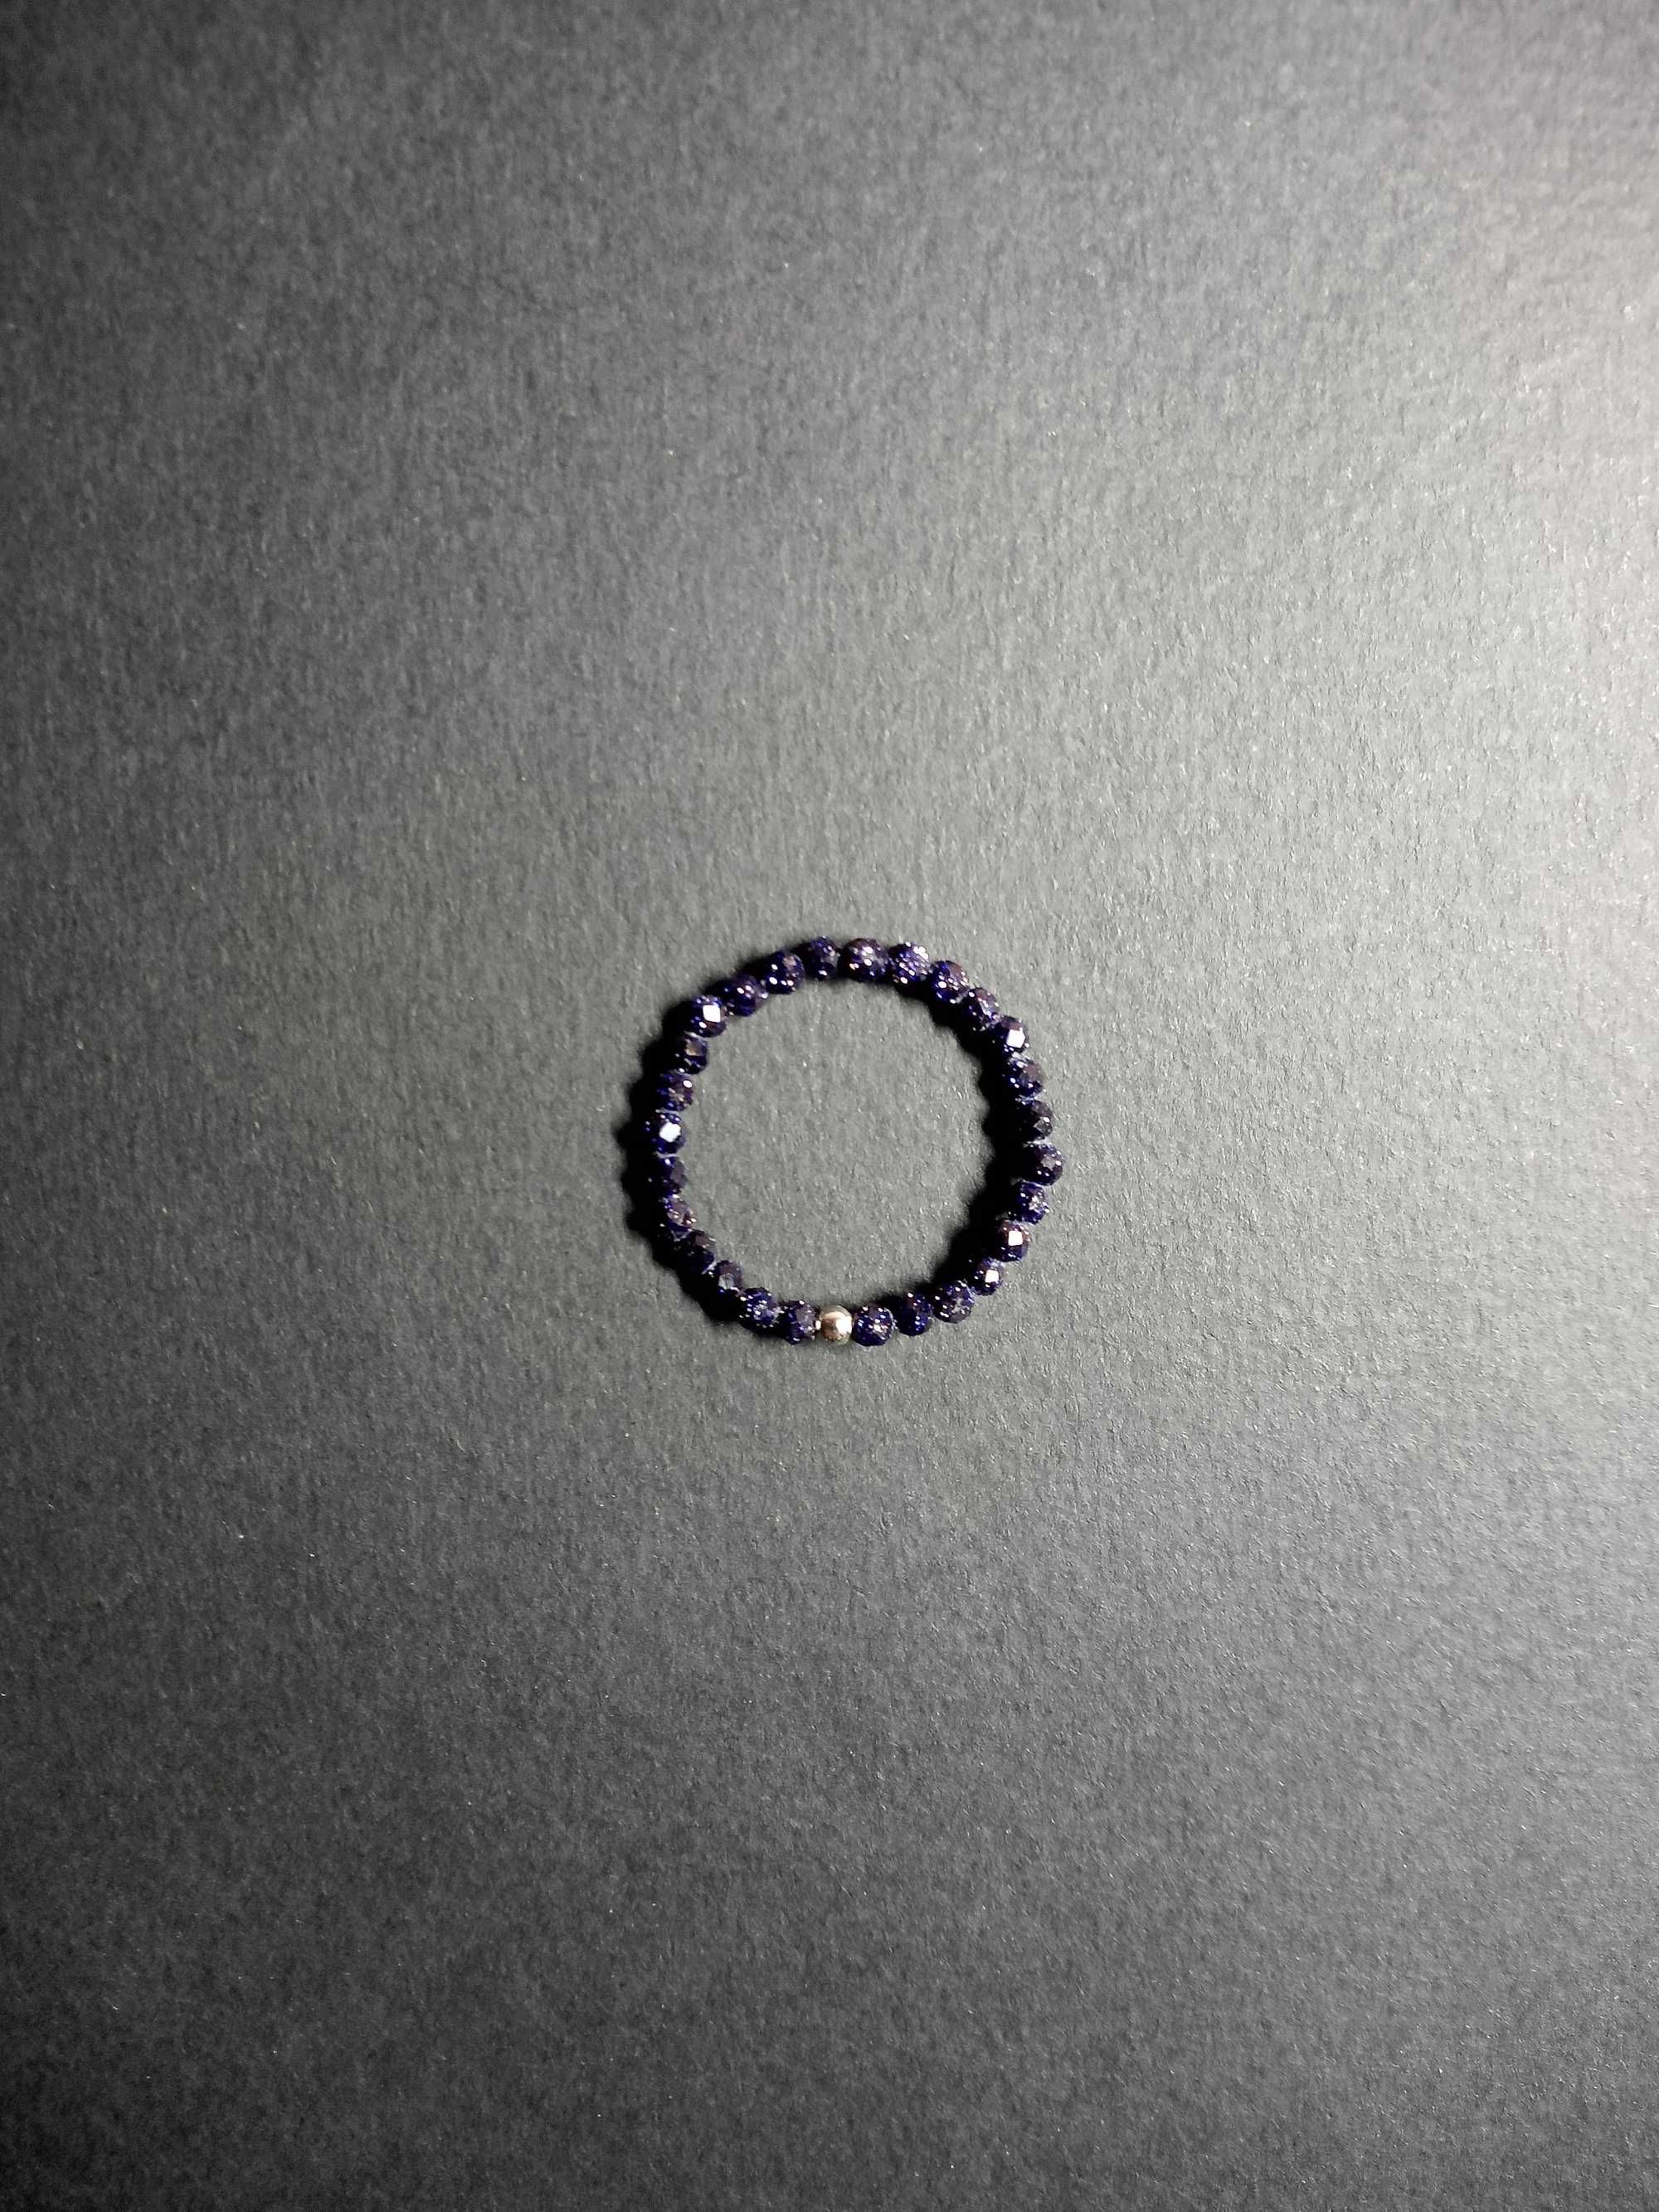 синее кольцо из авантюрина Авантюрин кольцо серебро свадьба